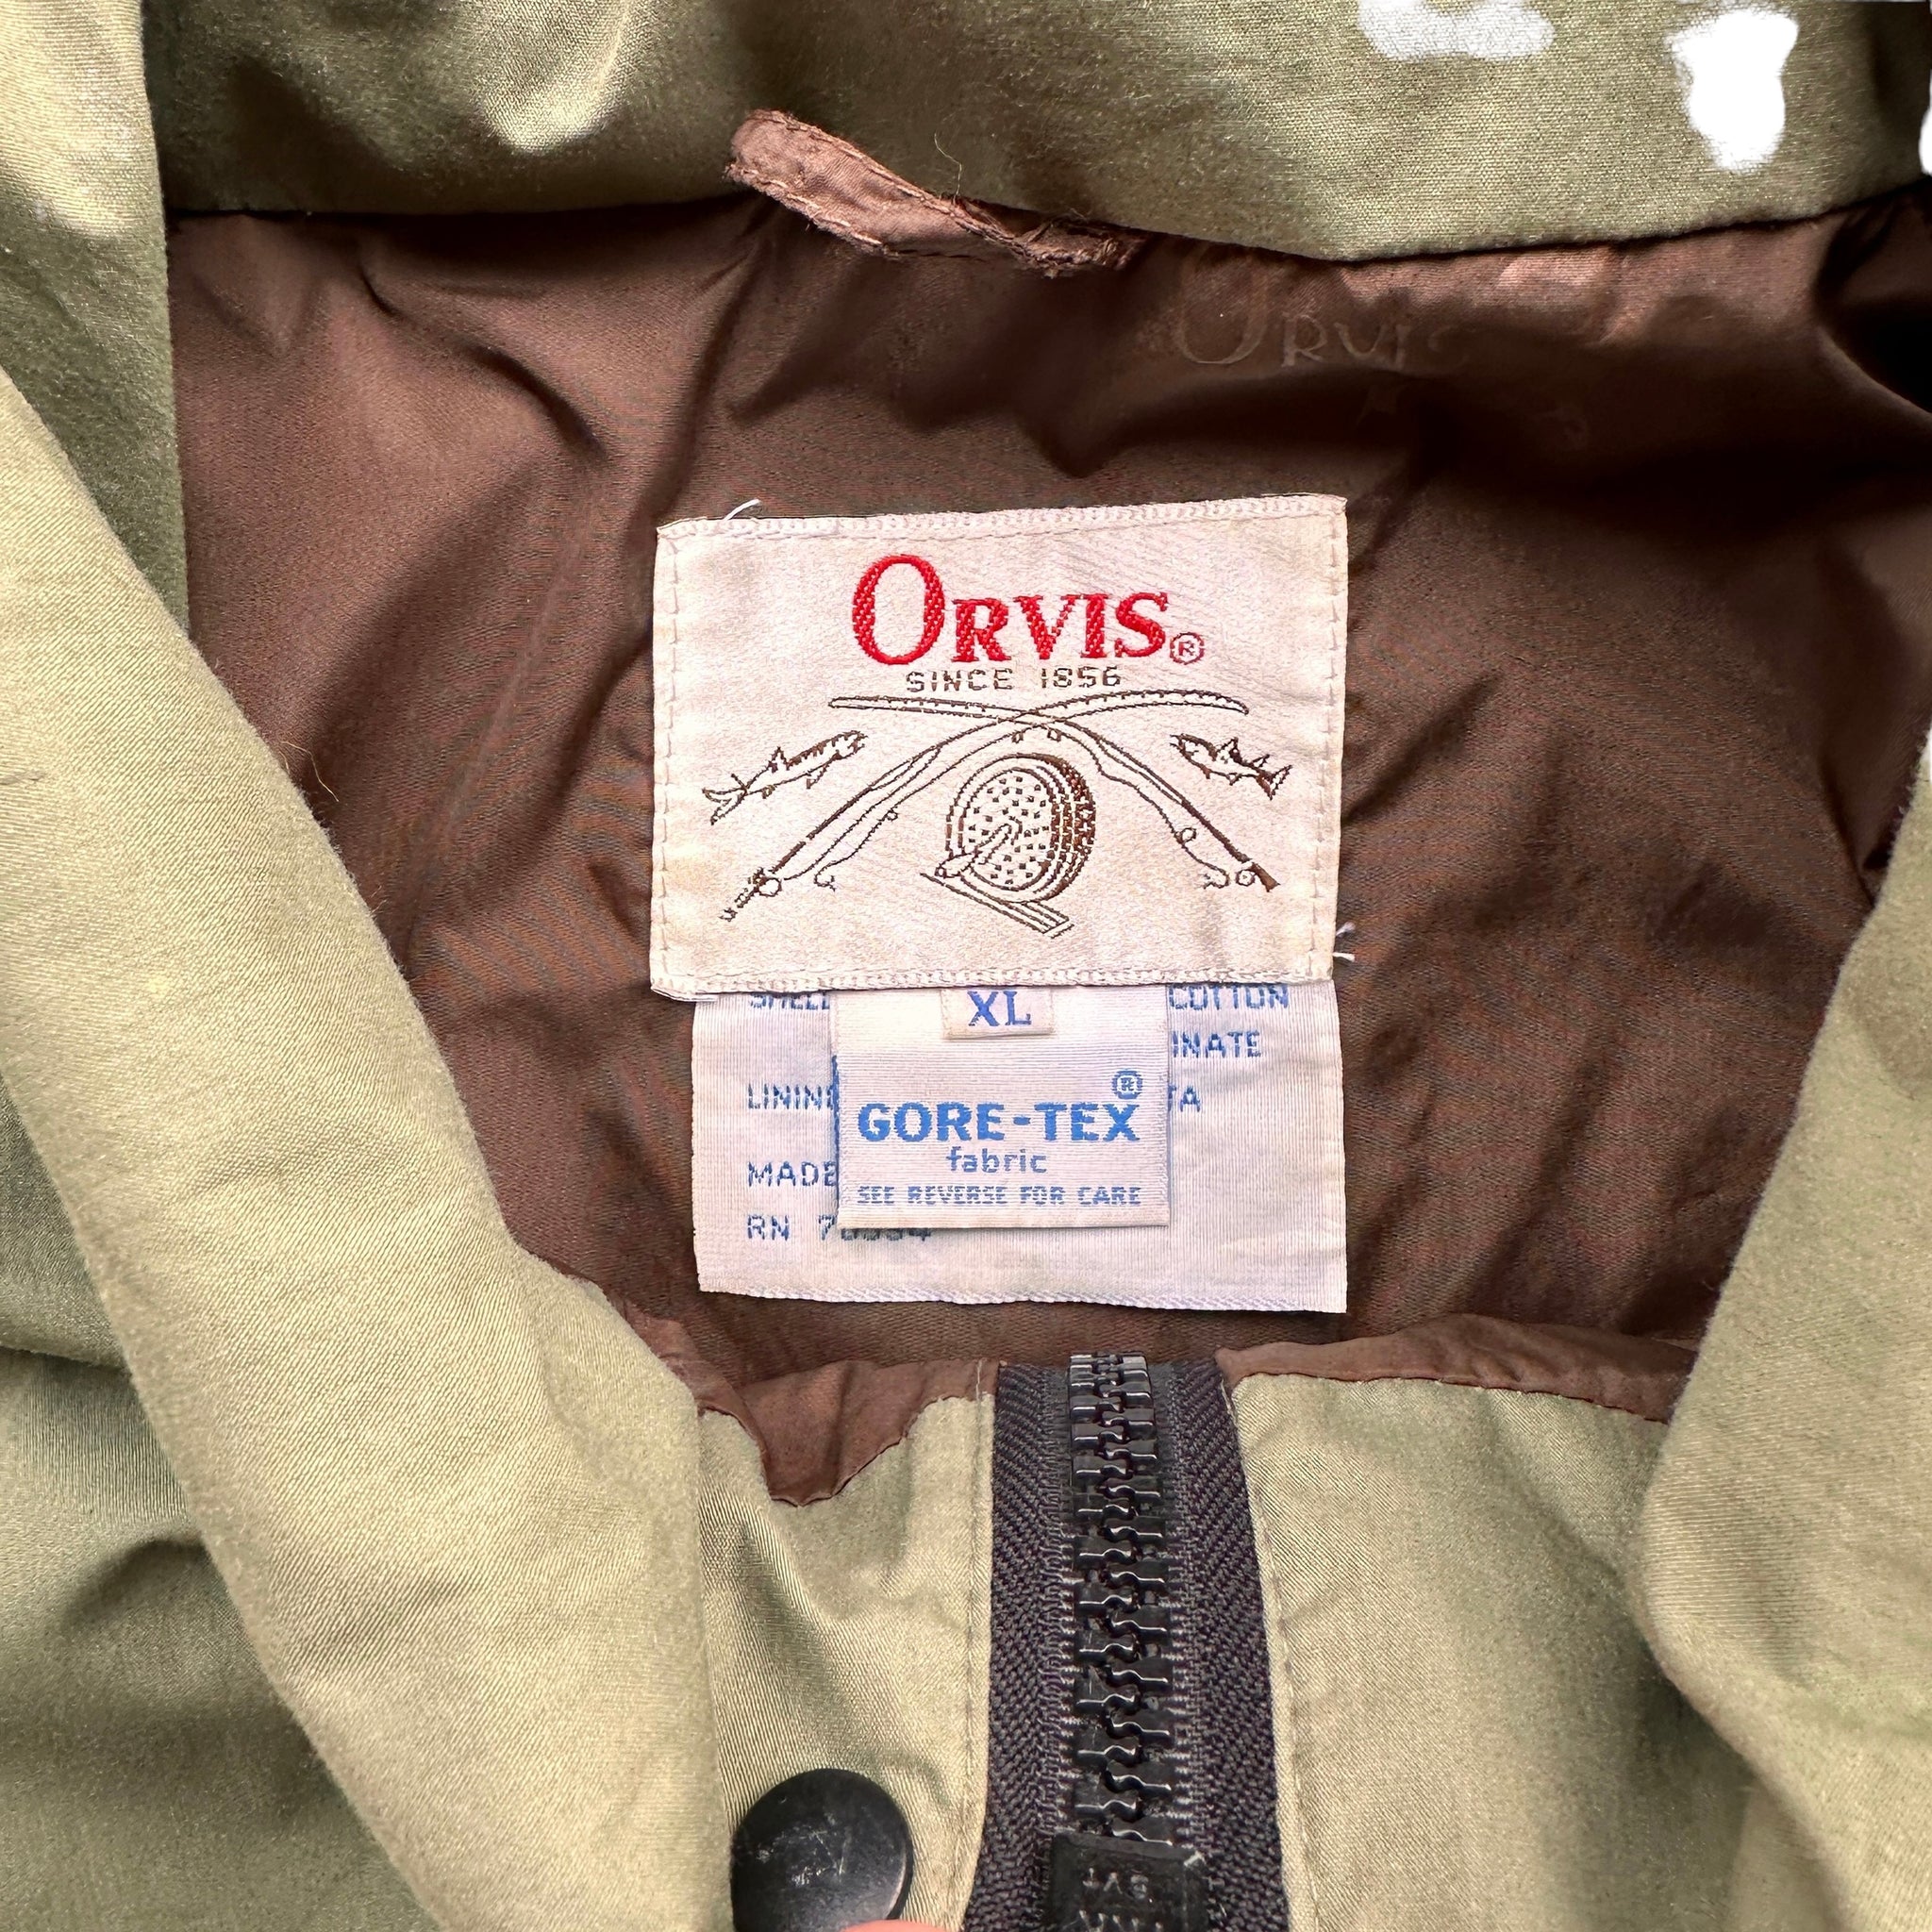 1985 Orvis goretex rain jacket XL